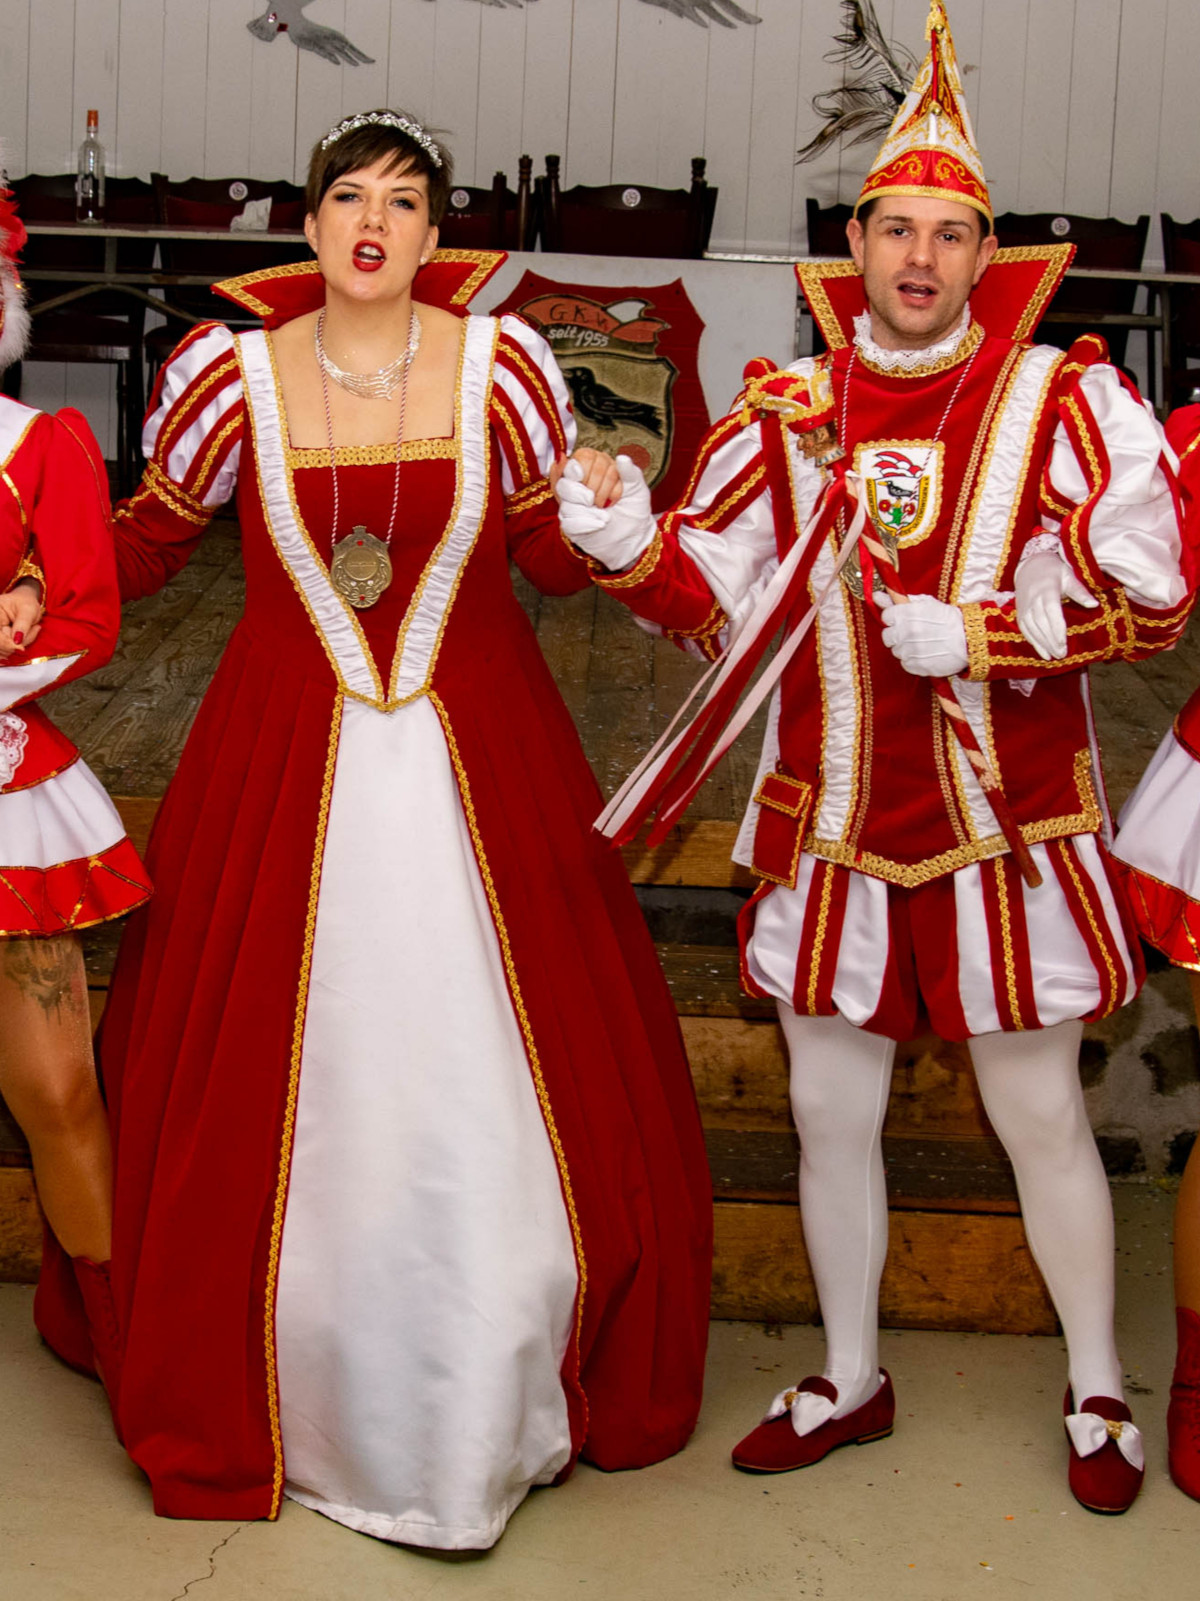 Bild: Prinz und Prinzessin bei einer Karnevalsveranstaltung.